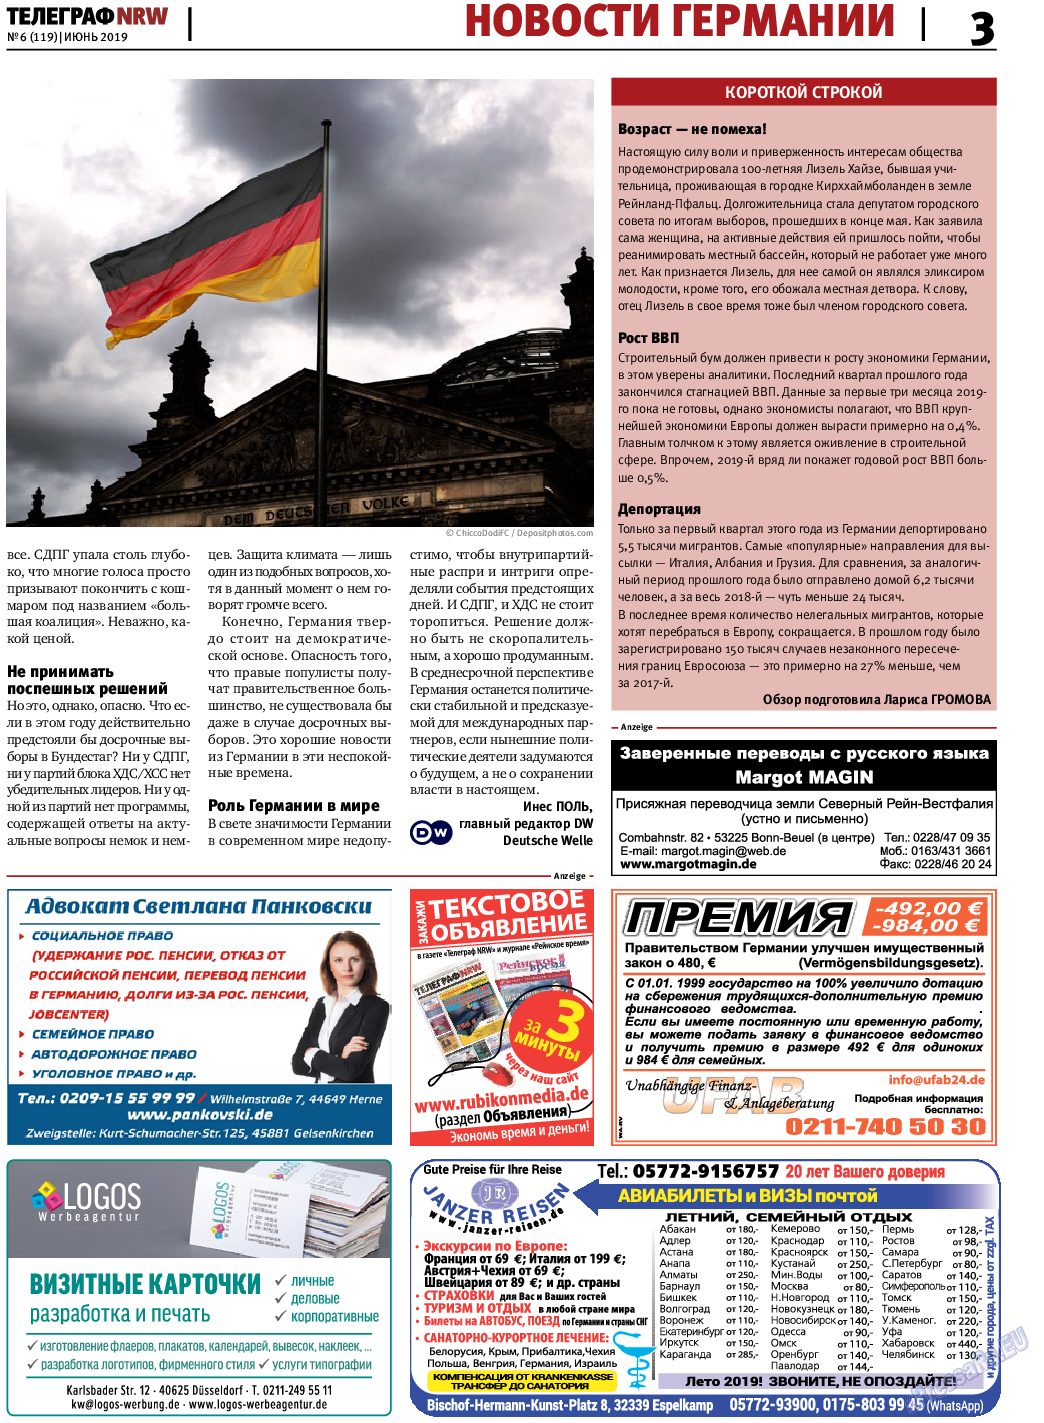 Телеграф NRW (газета). 2019 год, номер 6, стр. 3